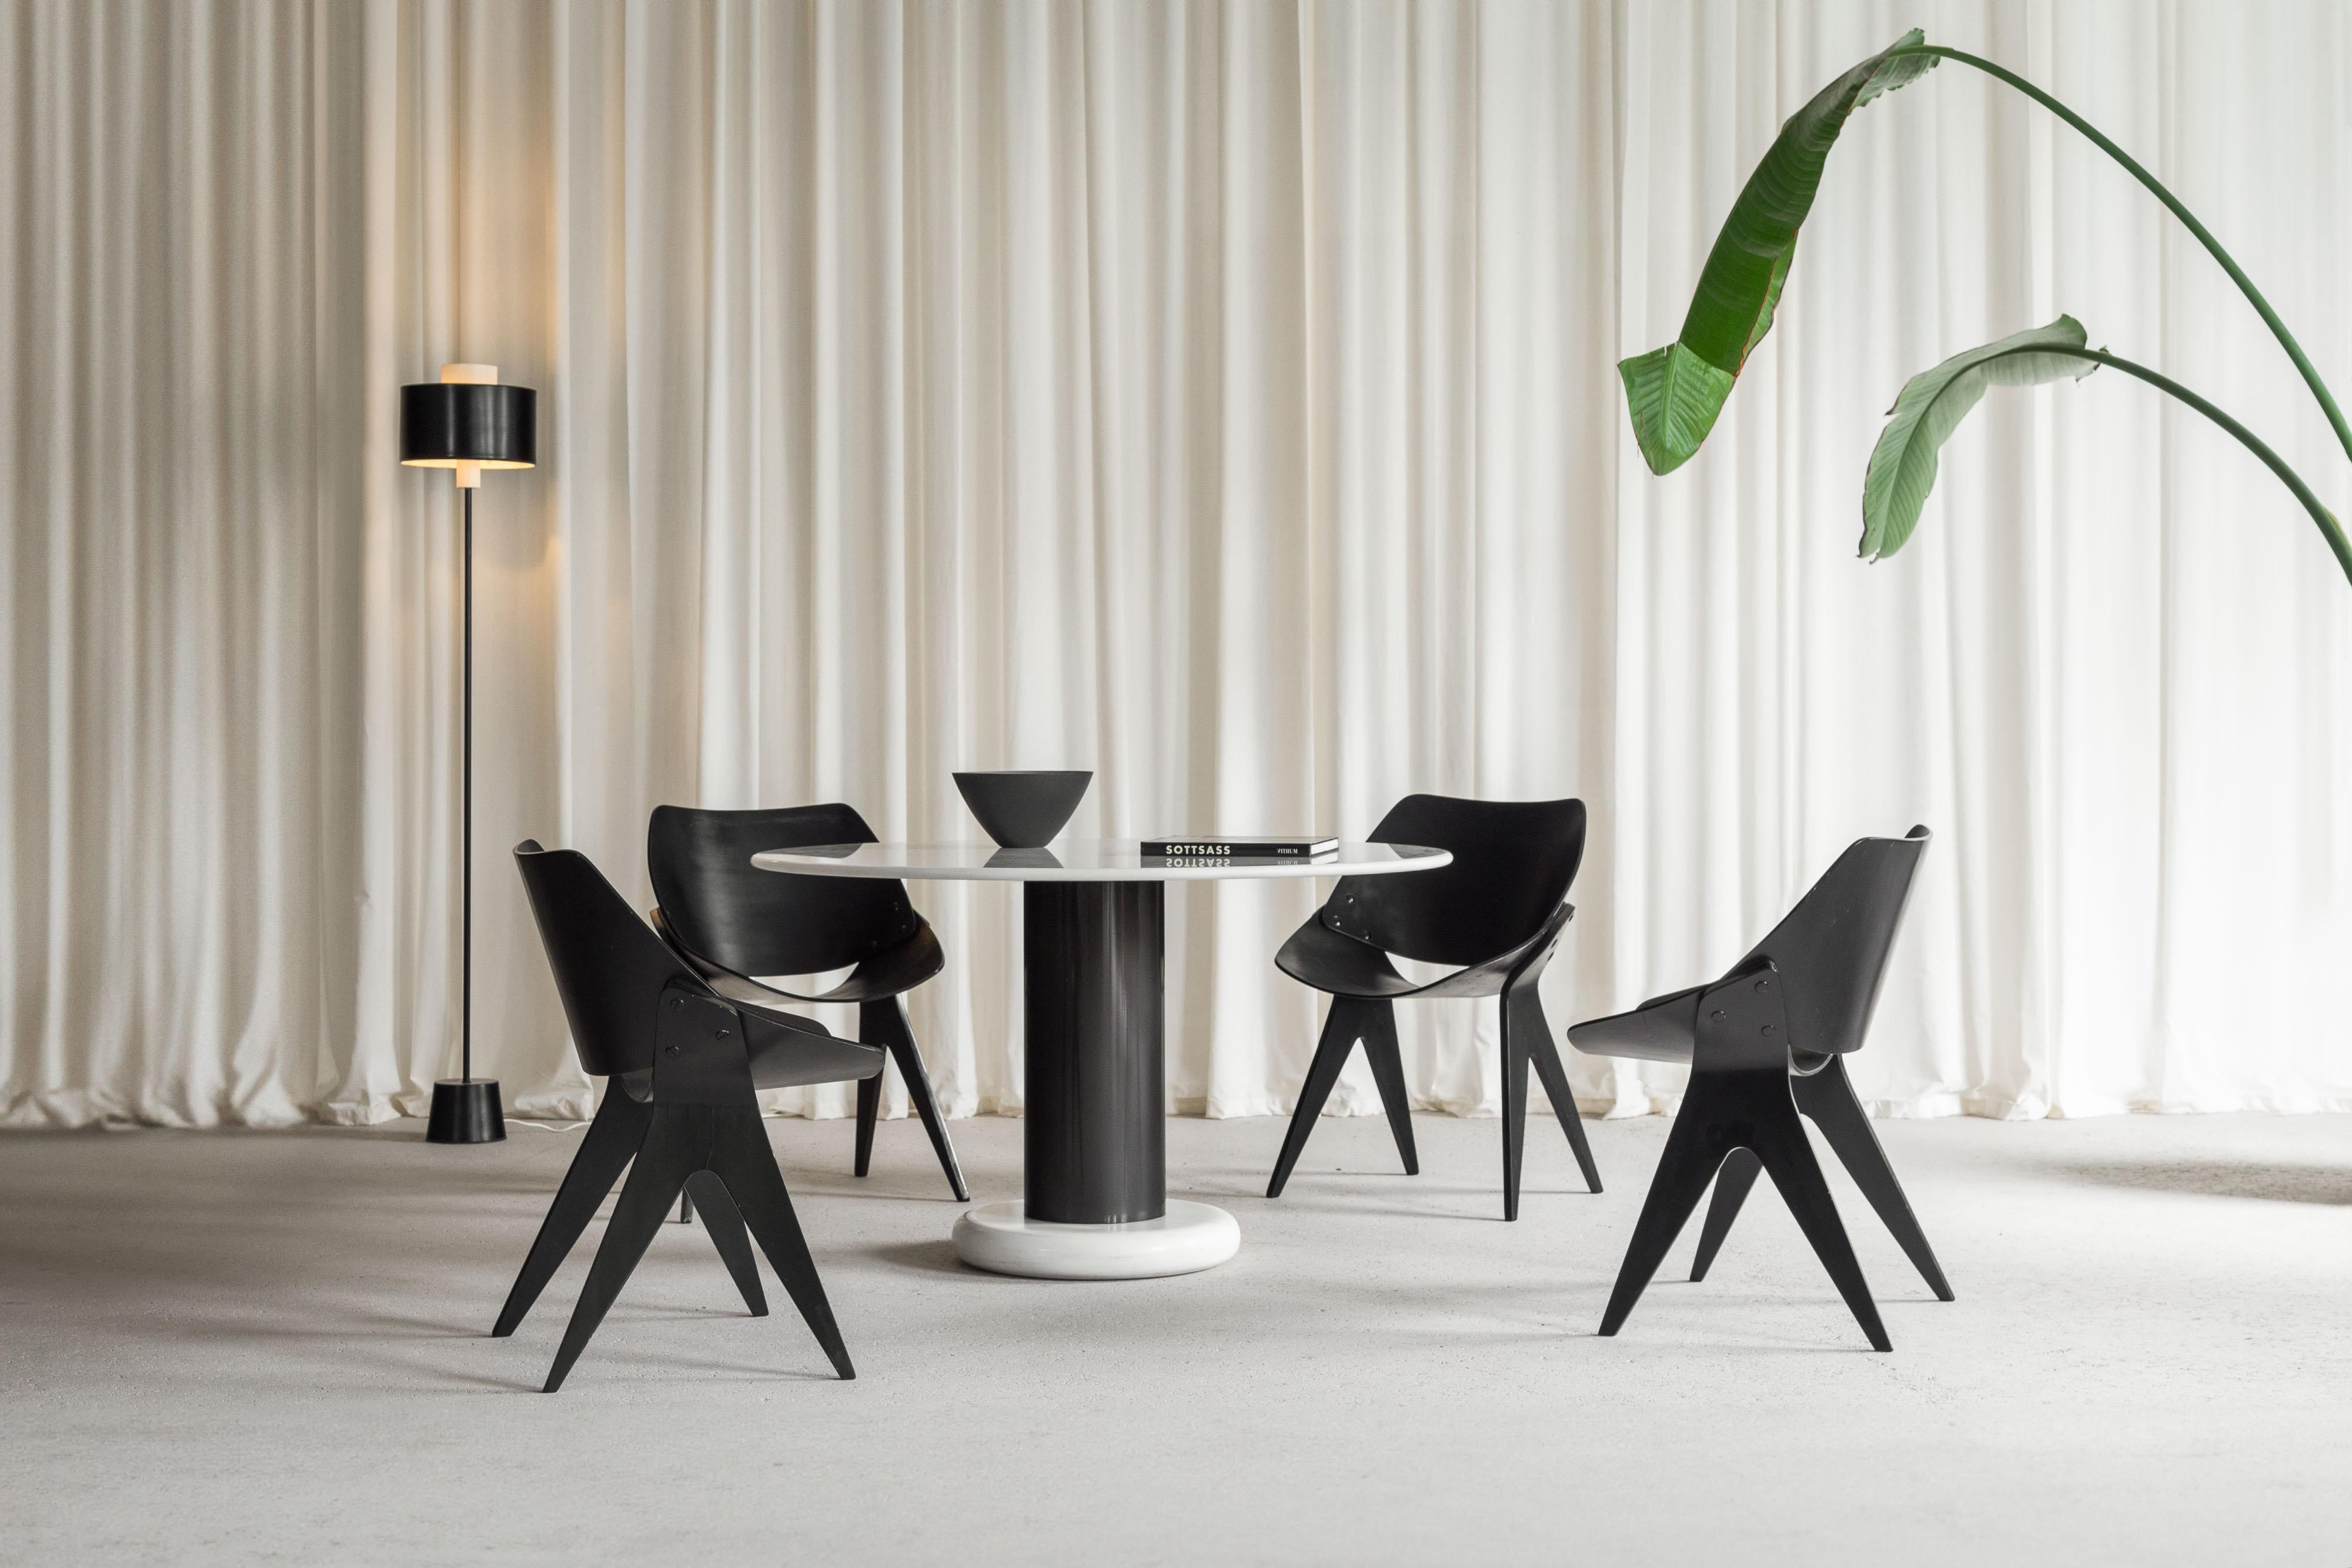 Un fabuleux ensemble de 4 chaises de salle à manger en contreplaqué 'Bivalve 940' conçu par Gianni Moscatelli et fabriqué en Italie vers 1955. Ces magnifiques chaises de salle à manger en contreplaqué organique ont une forme inhabituelle mais